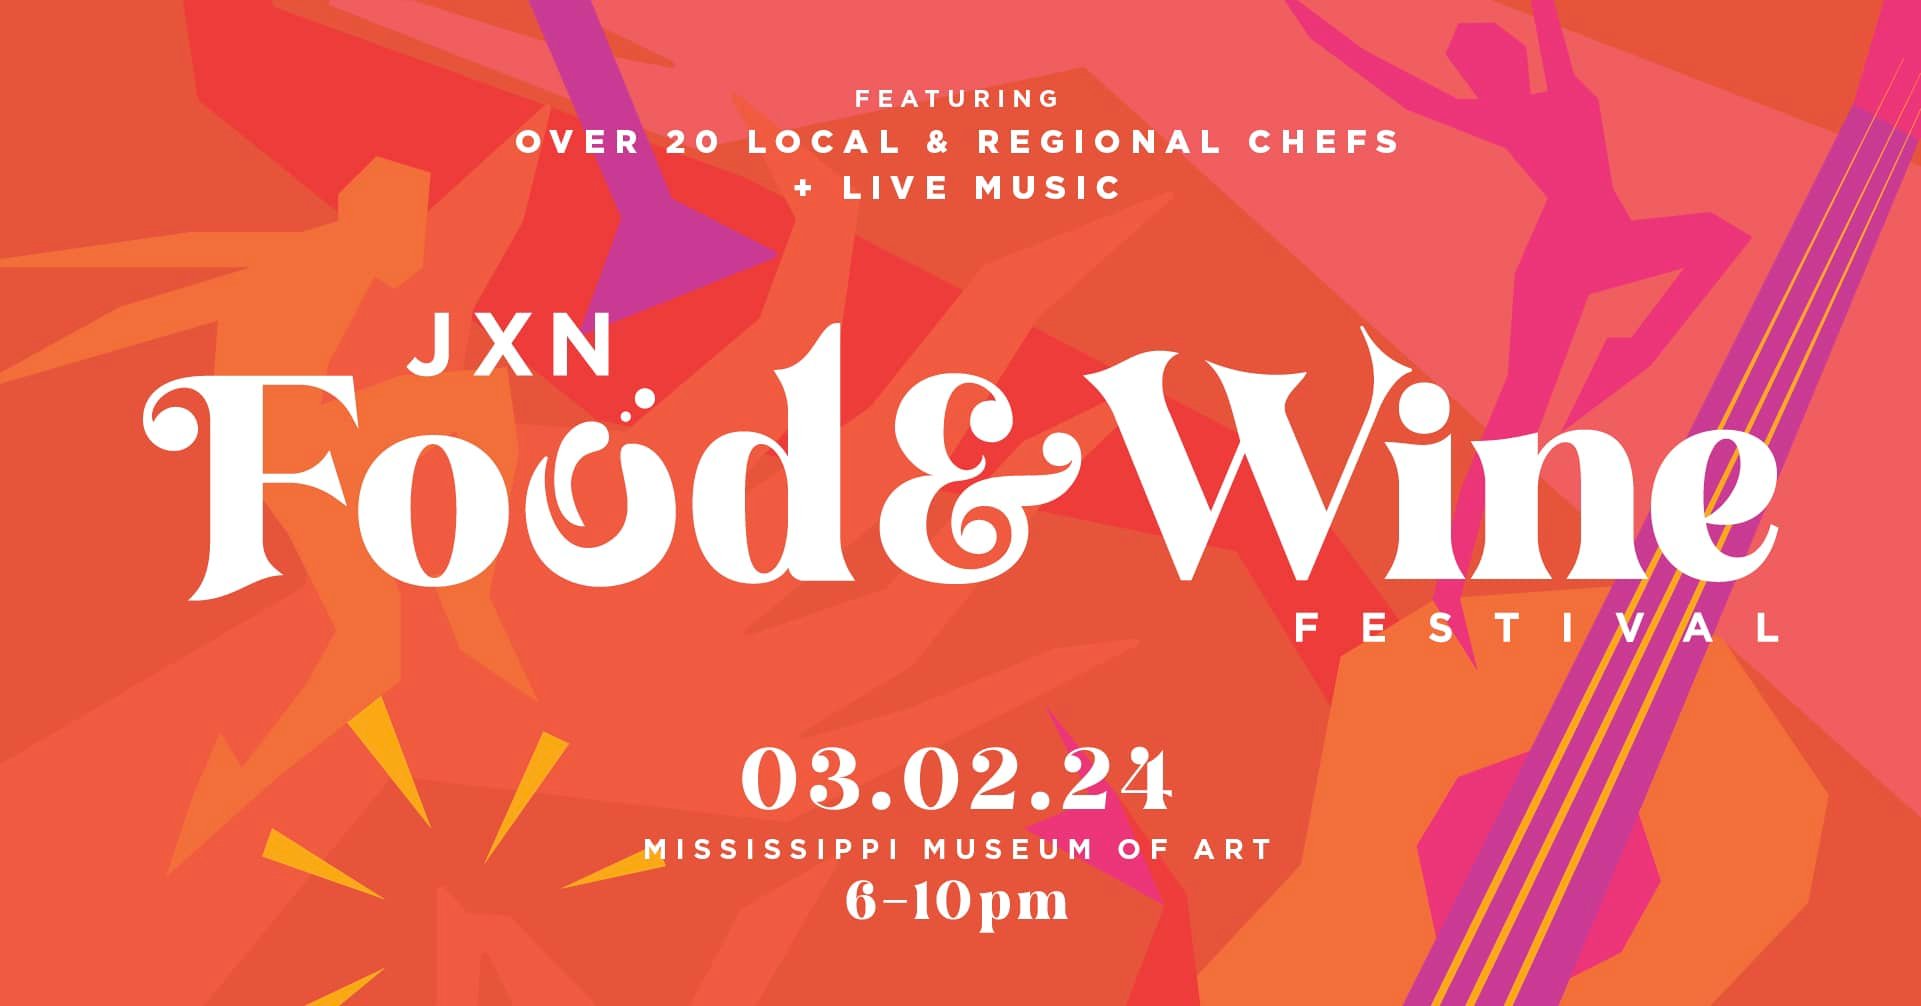 JXN Food & Wine Festival